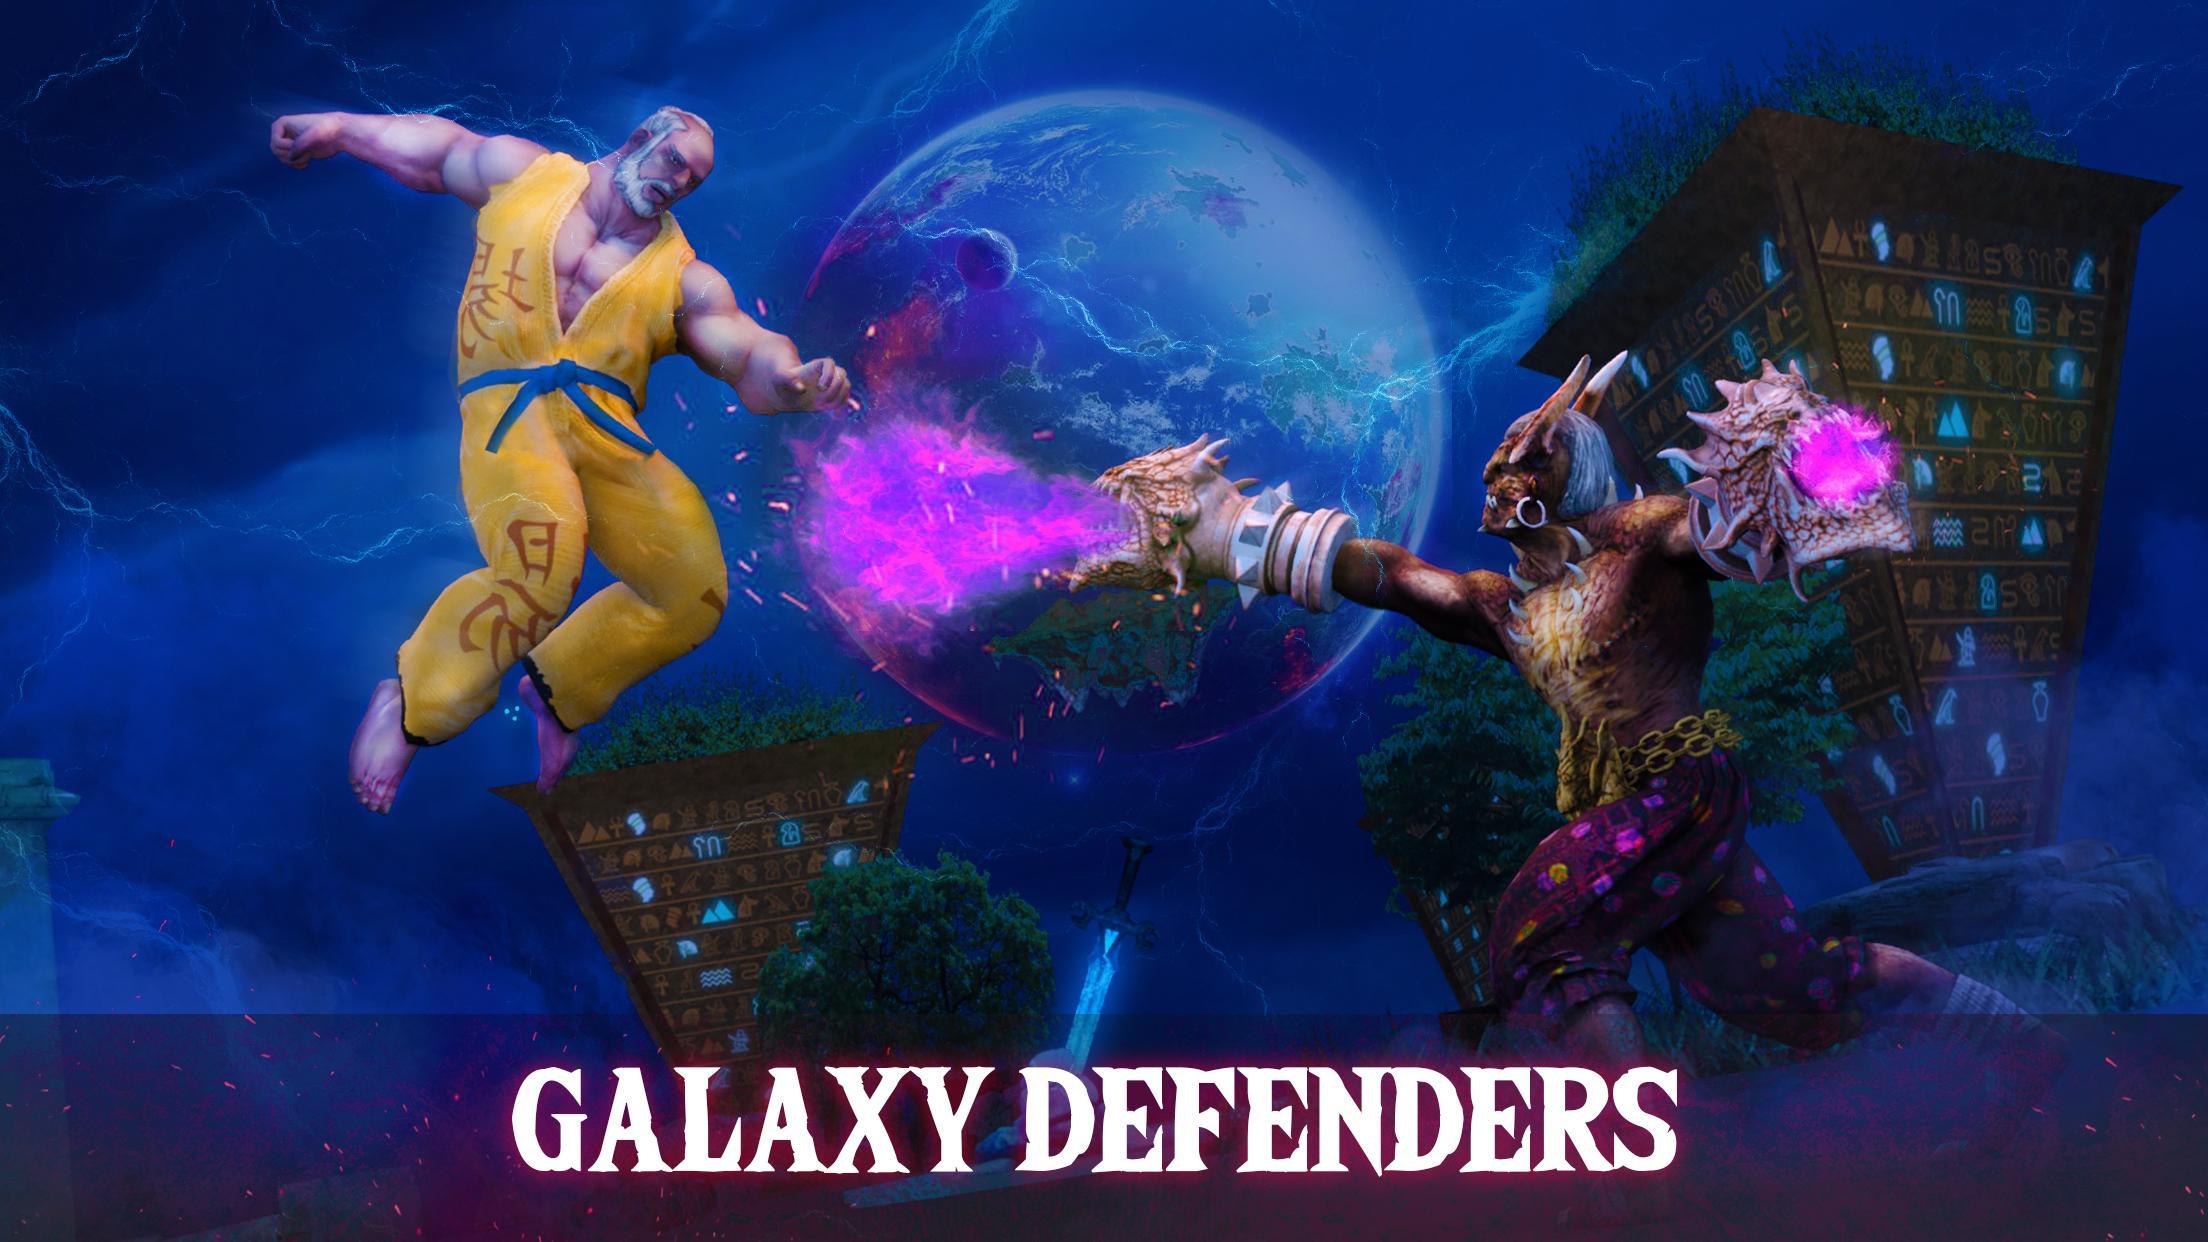 Galaxy defenders